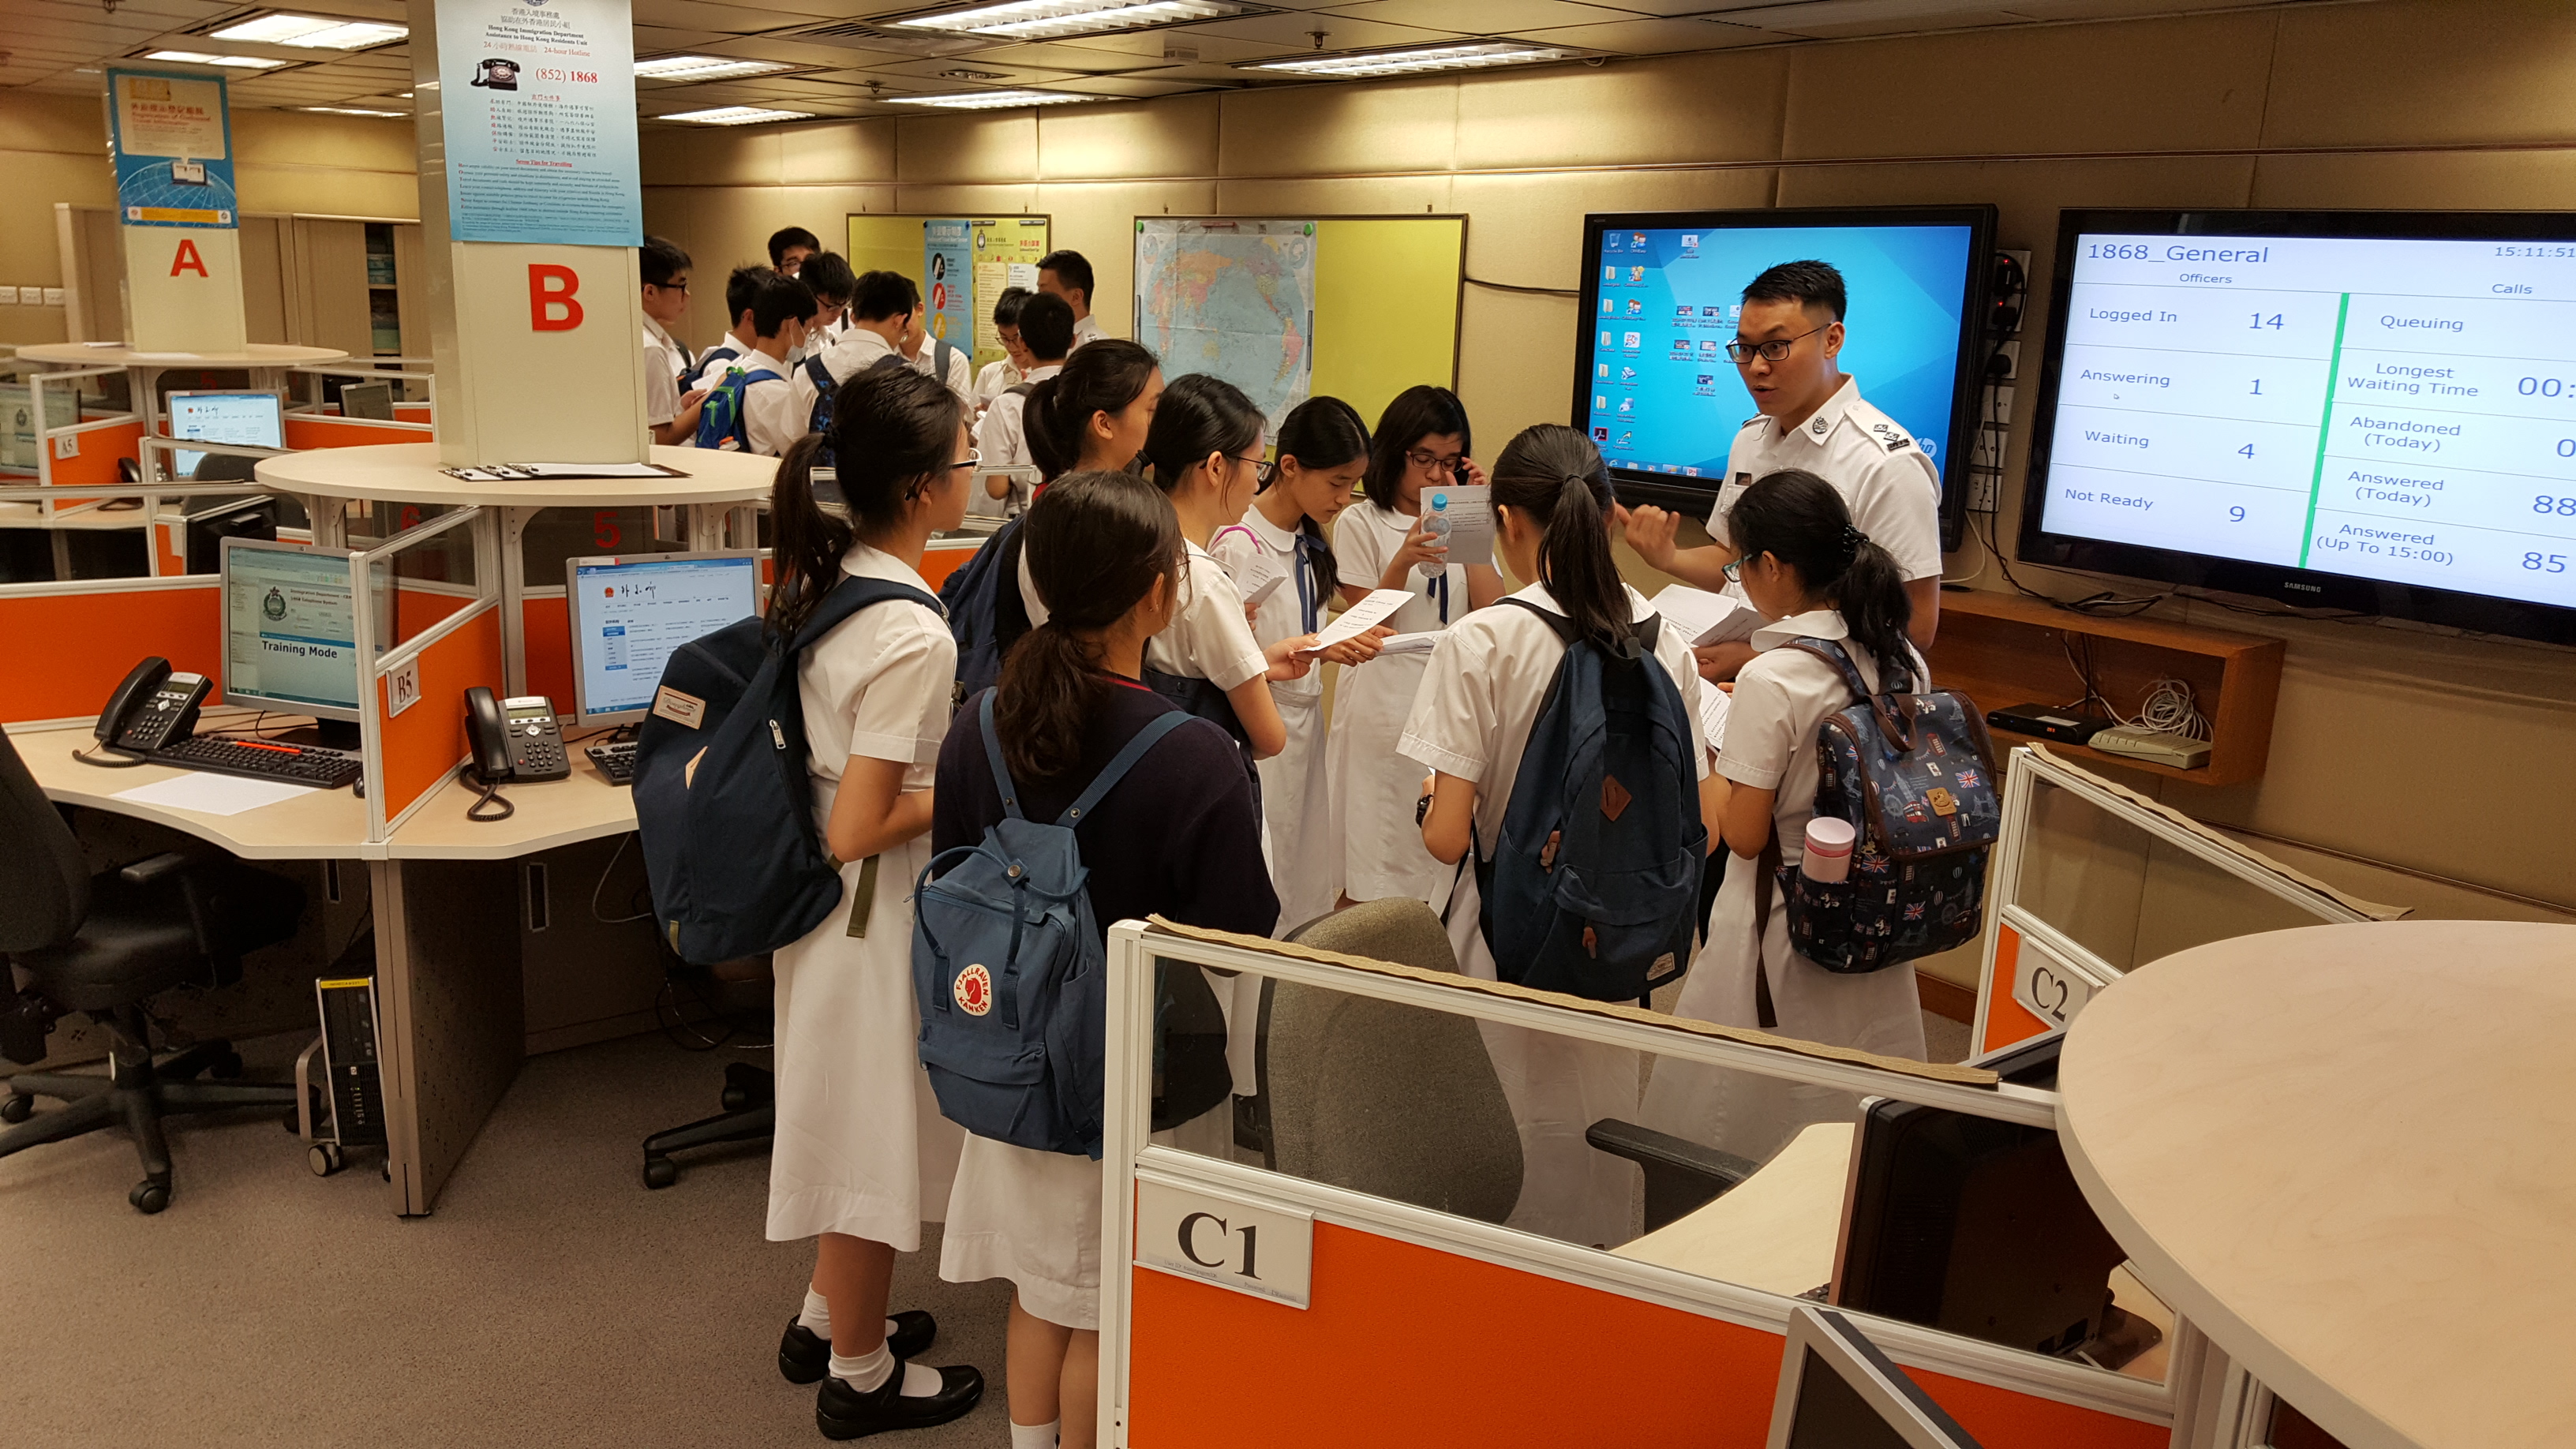 参观入境事务处协助在外香港居民小组